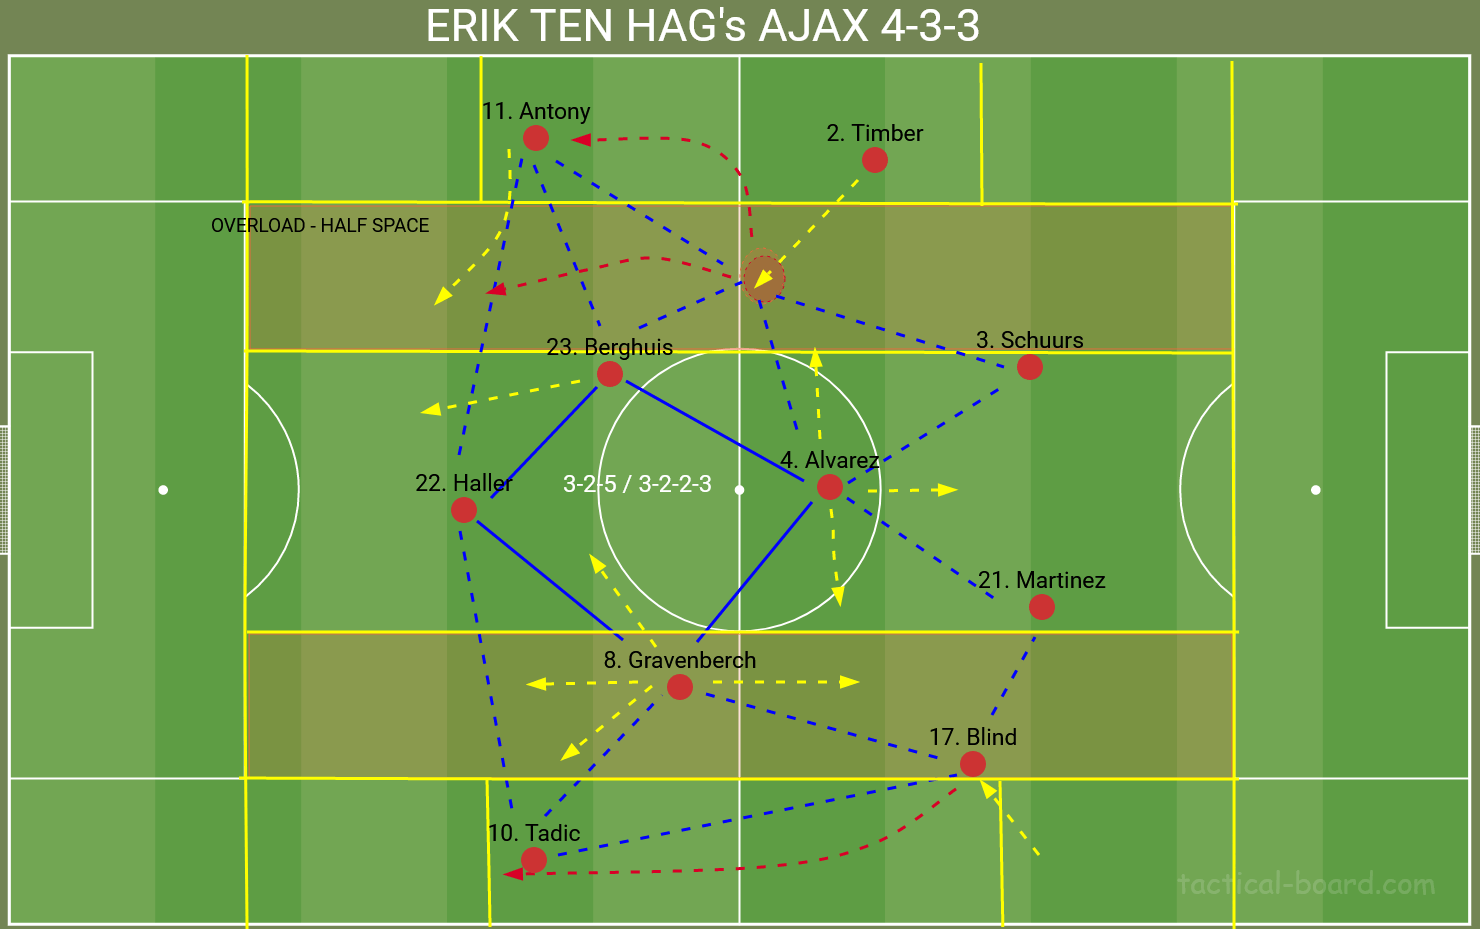 Erik ten Hag's Ajax 4-3-3 system